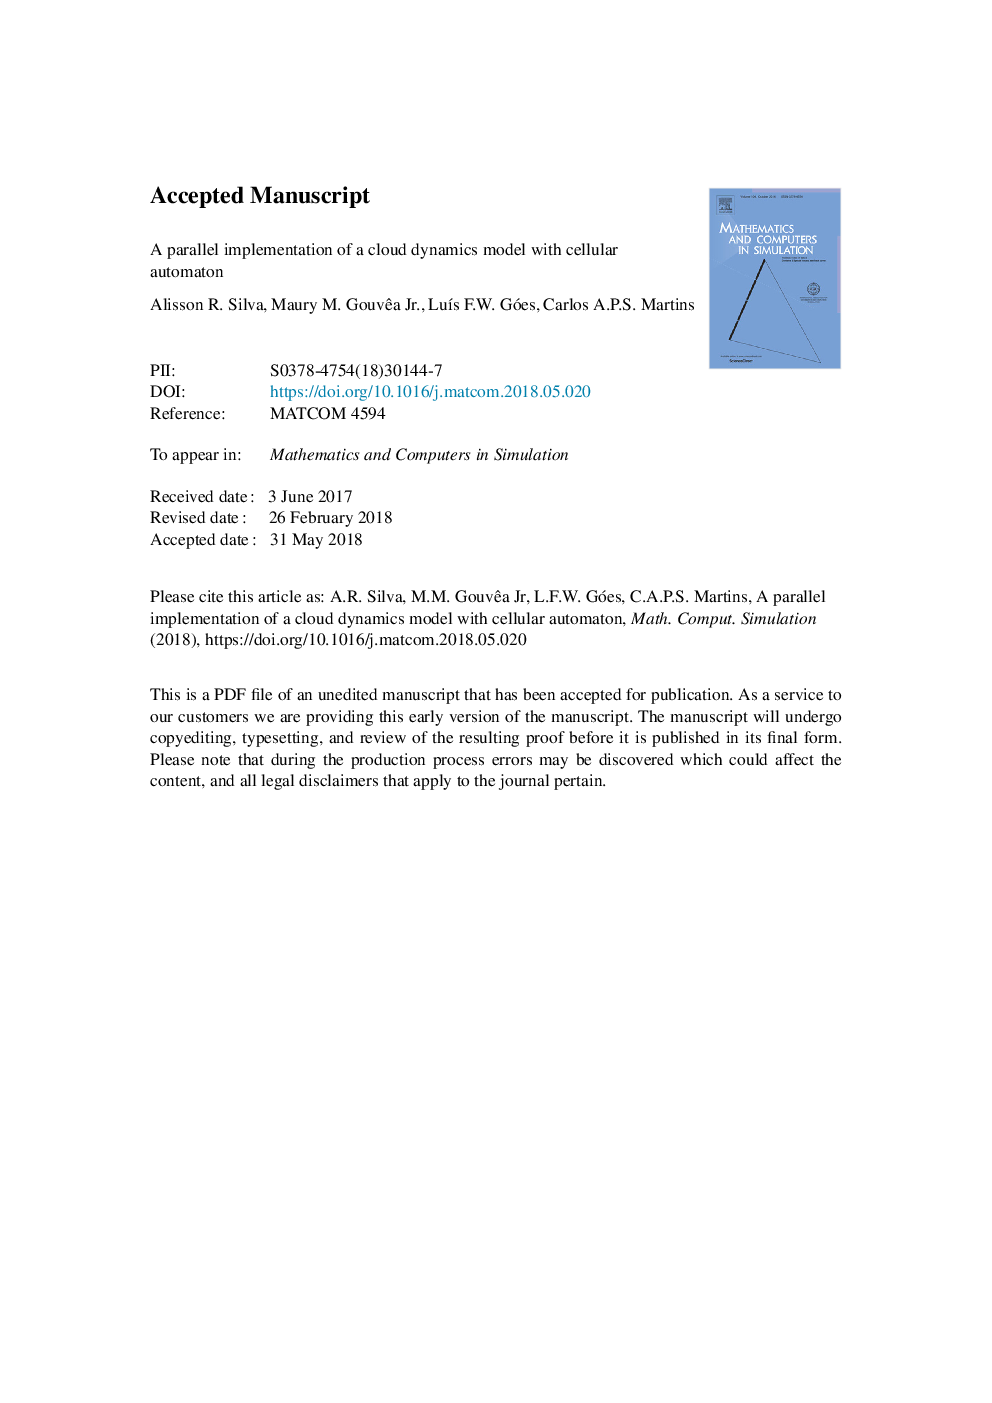 اجرای موازی مدل دینامیکی ابر با دستگاه سلولی 